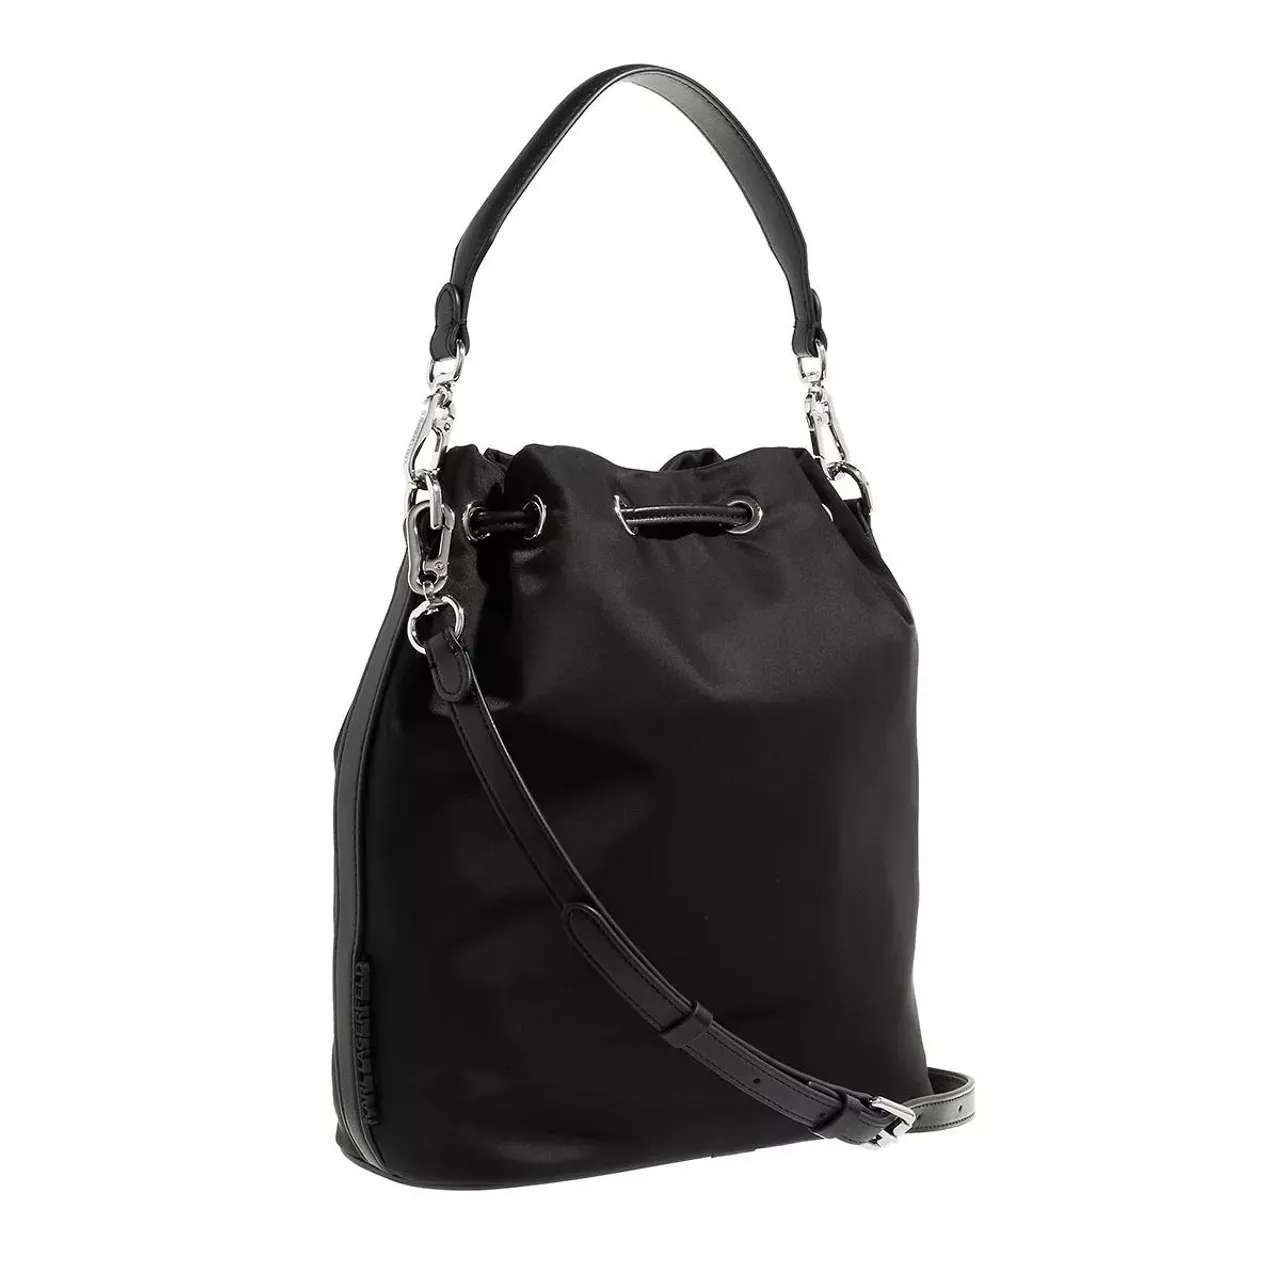 Karl Lagerfeld Bucket Bags - Ikonik Nylon Bucket - black - Bucket Bags for ladies